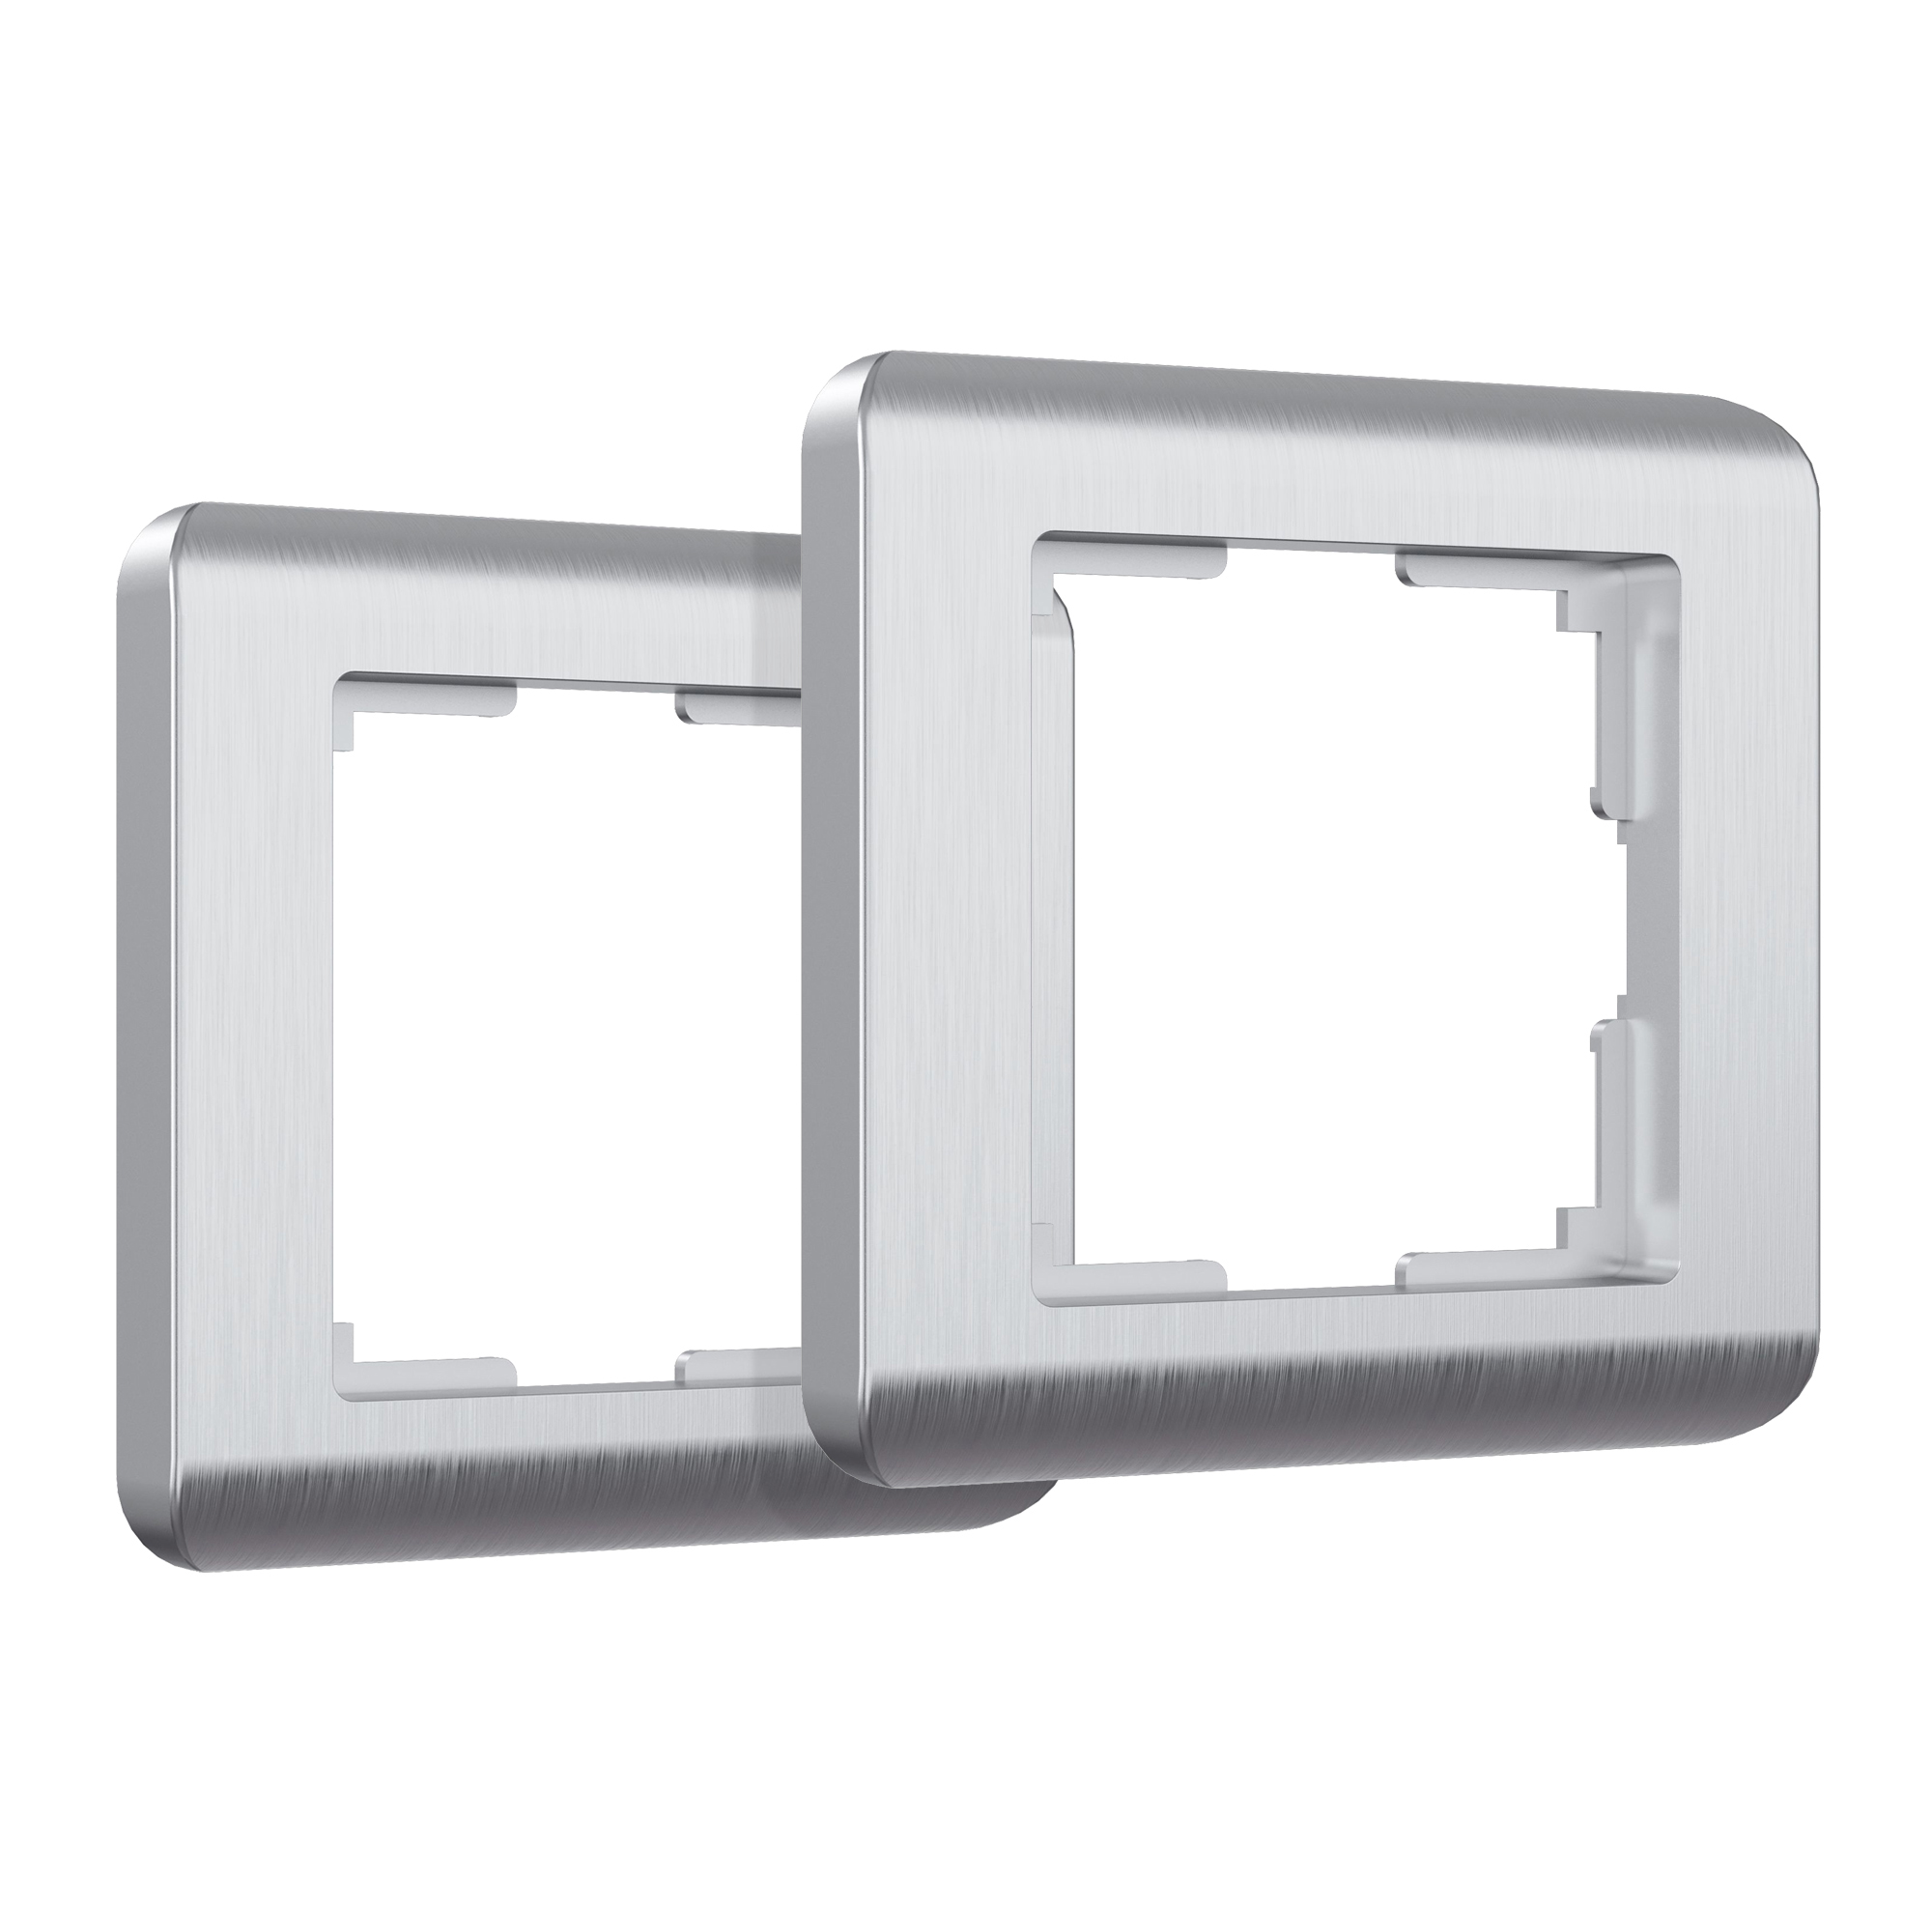 Рамка для розетки/выключателя на 1 пост (комплект 2 шт) Werkel Stream серебряный W0012106 терка для цедры металлическая доляна 11×7 5×1 2 см серебряный